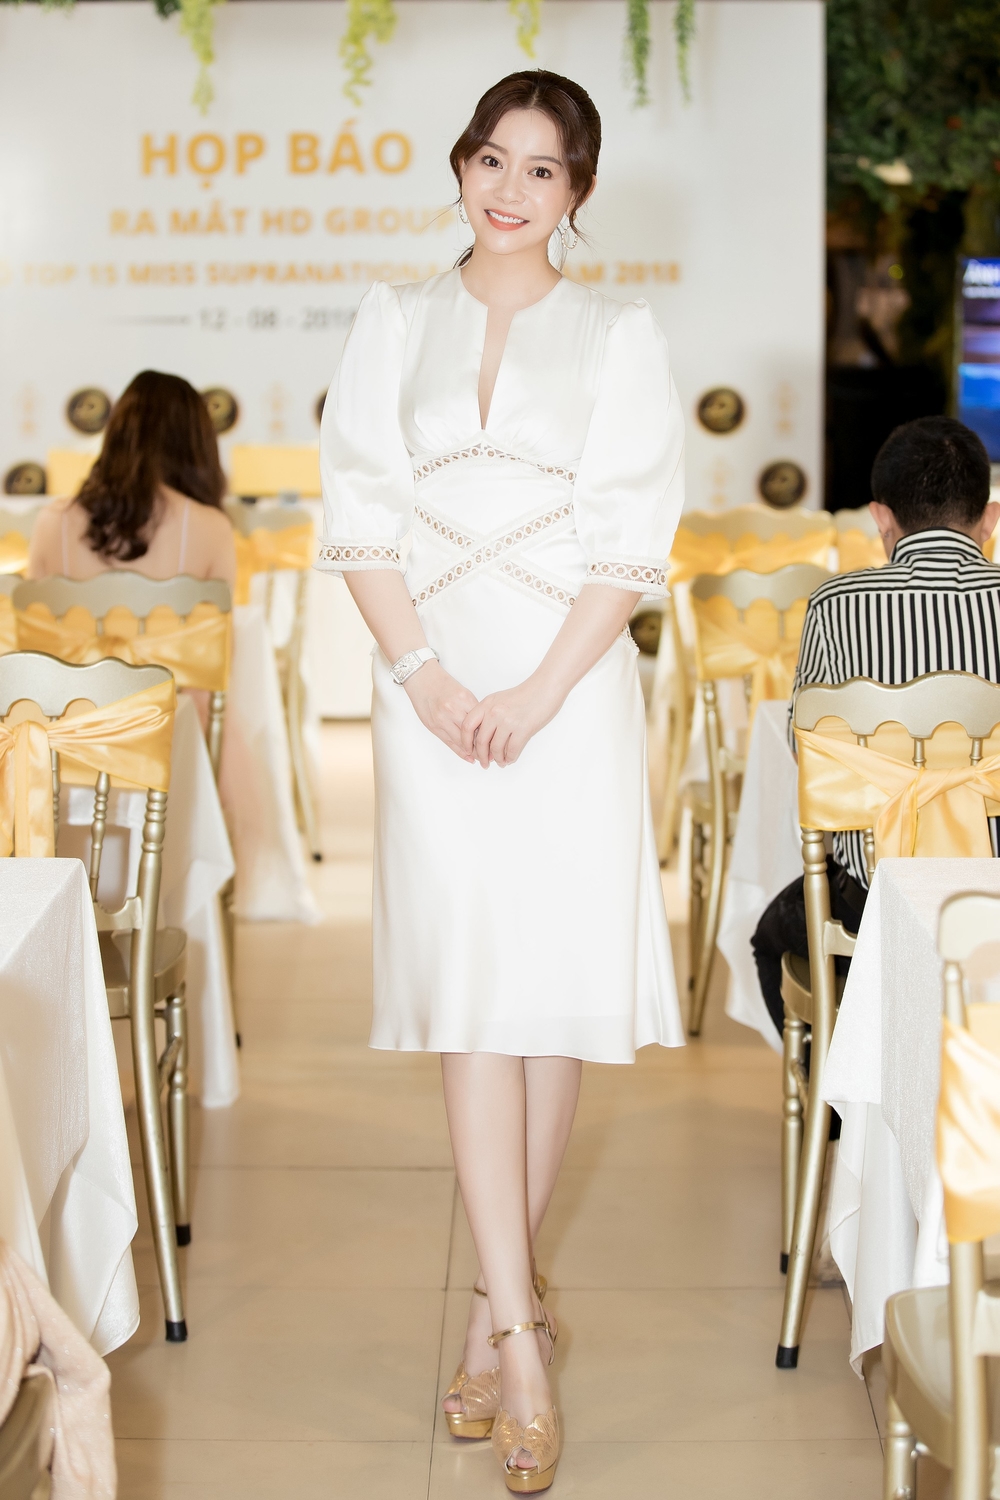 
Hoa hậu Hải Dương - Trưởng BTC cuộc thi xuất hiện trong bộ cánh trắng tinh khôi, thiết kế đơn giản, nhấn chi tiết viền khoét lạ mắt.